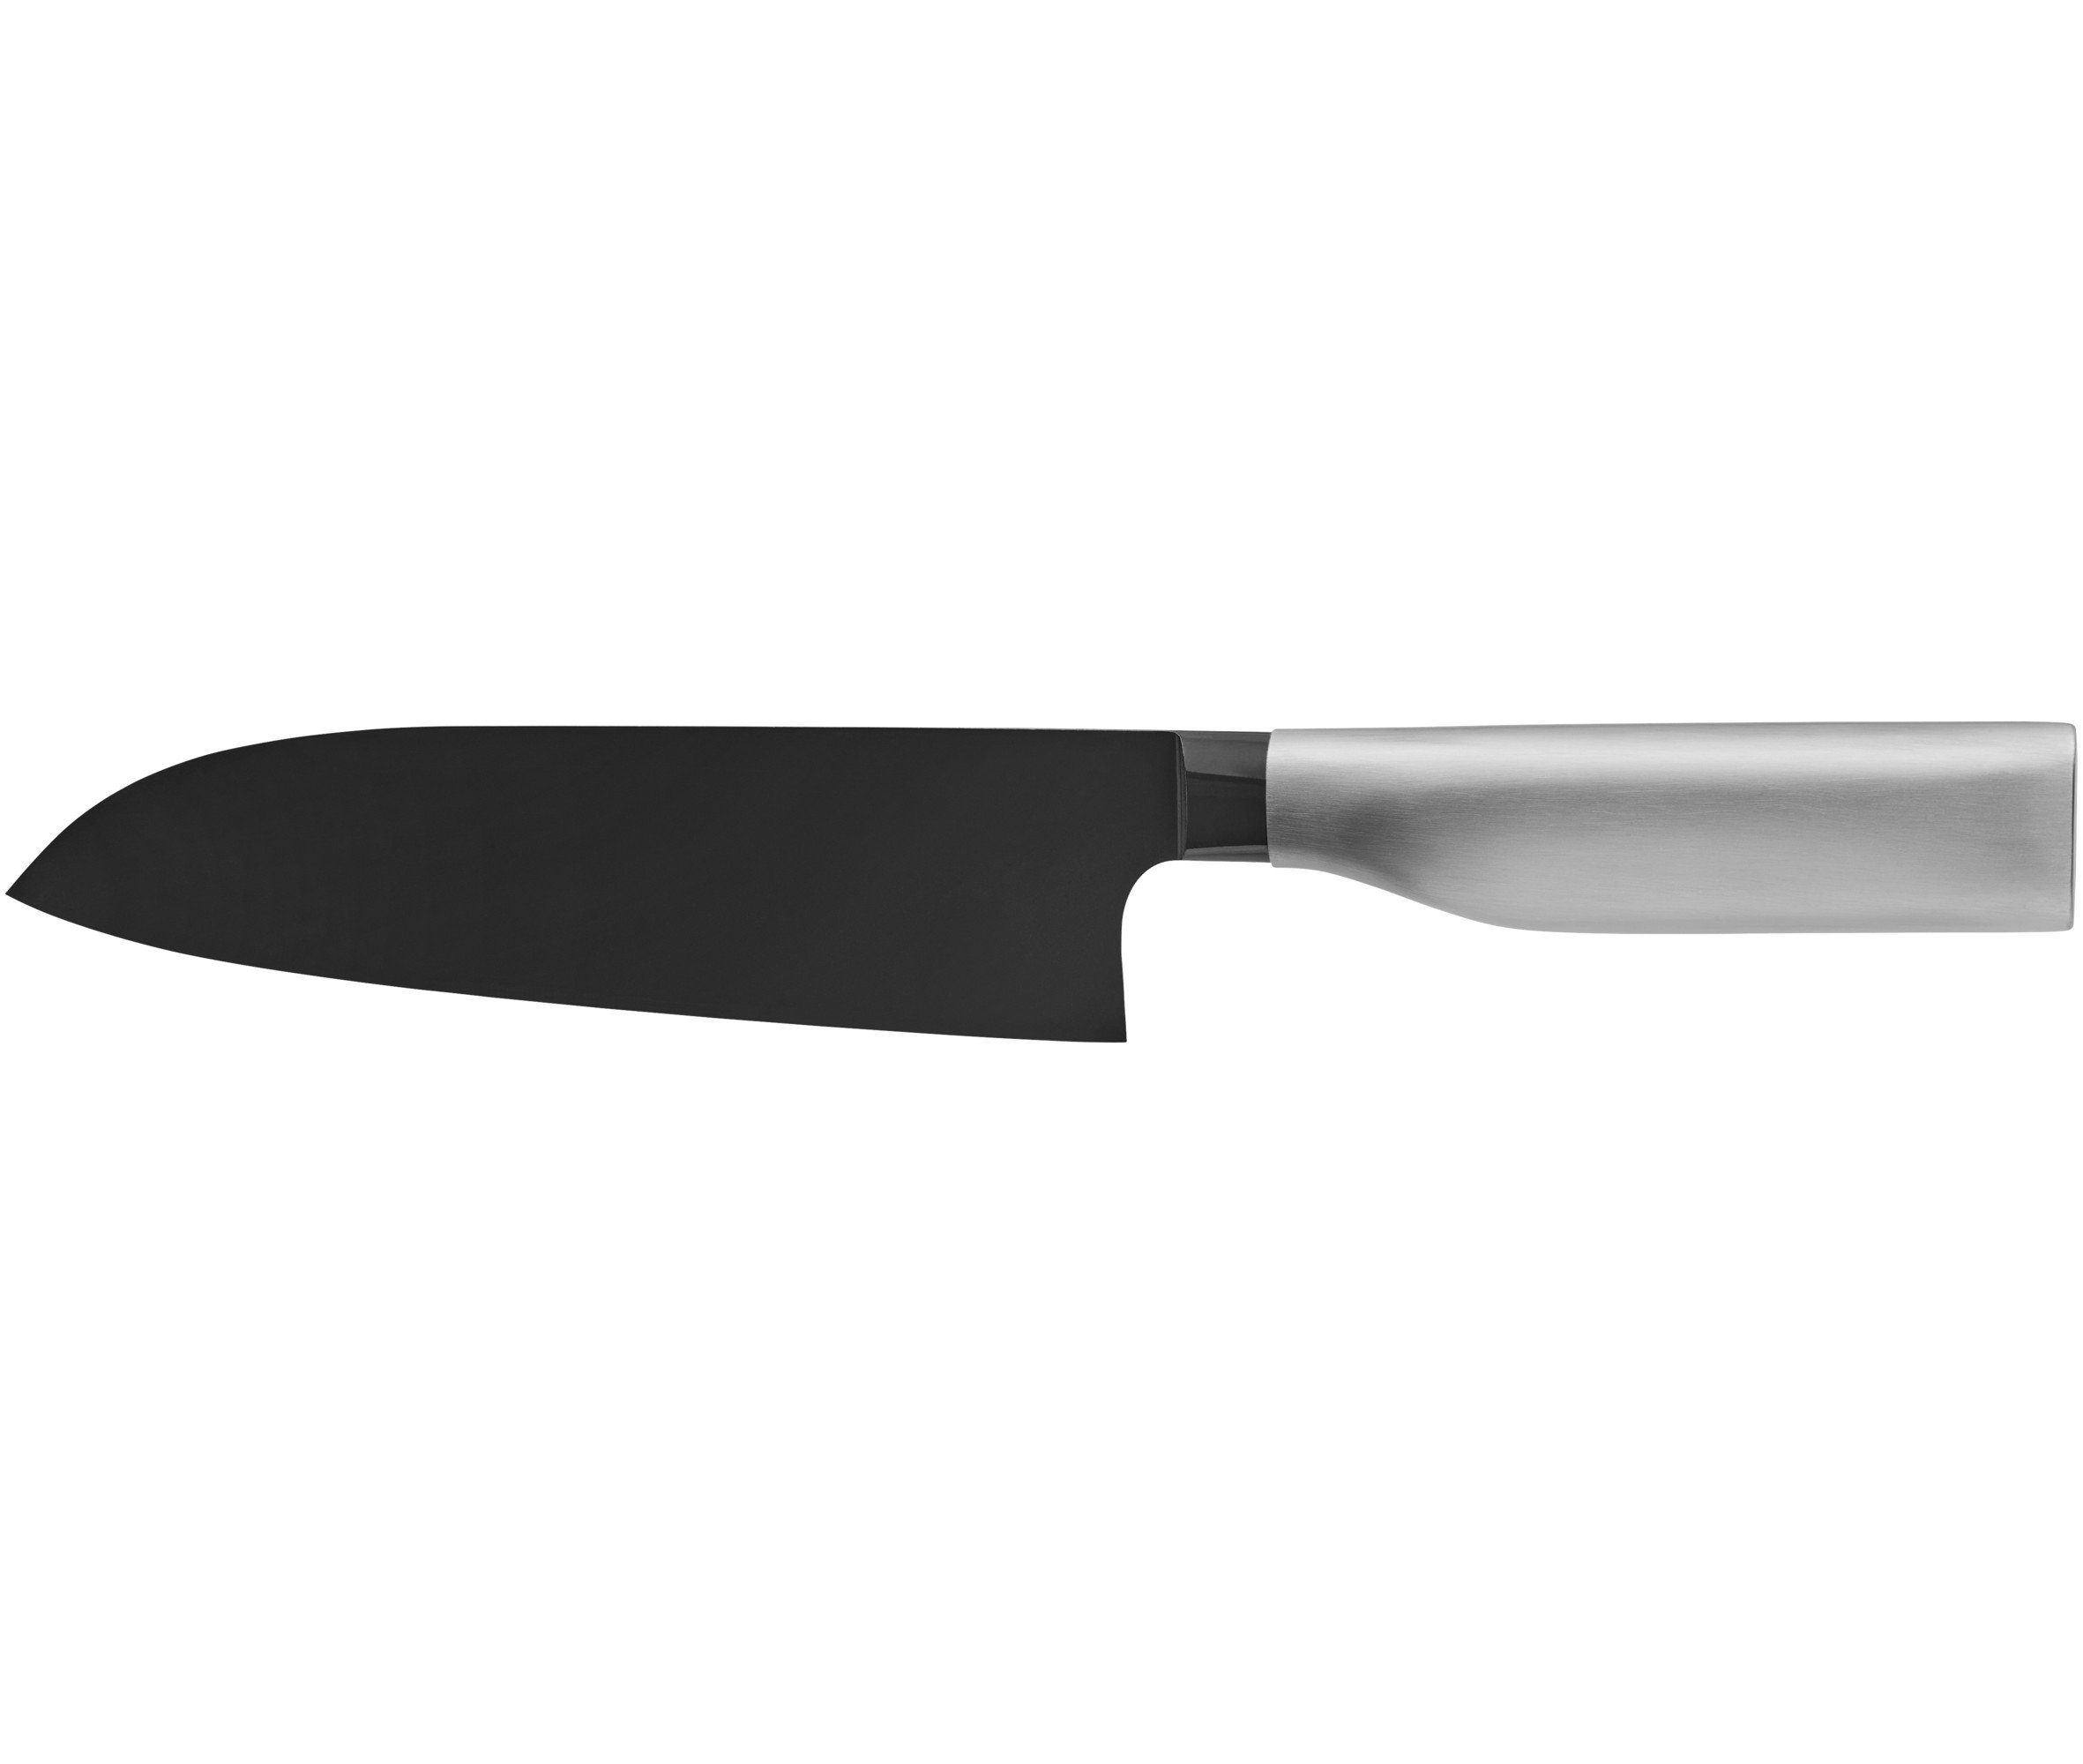 WMF Santokumesser Ultimate Black, Klinge 18,5 cm, immerwährende Schärfe, sicherer Fingerschutz